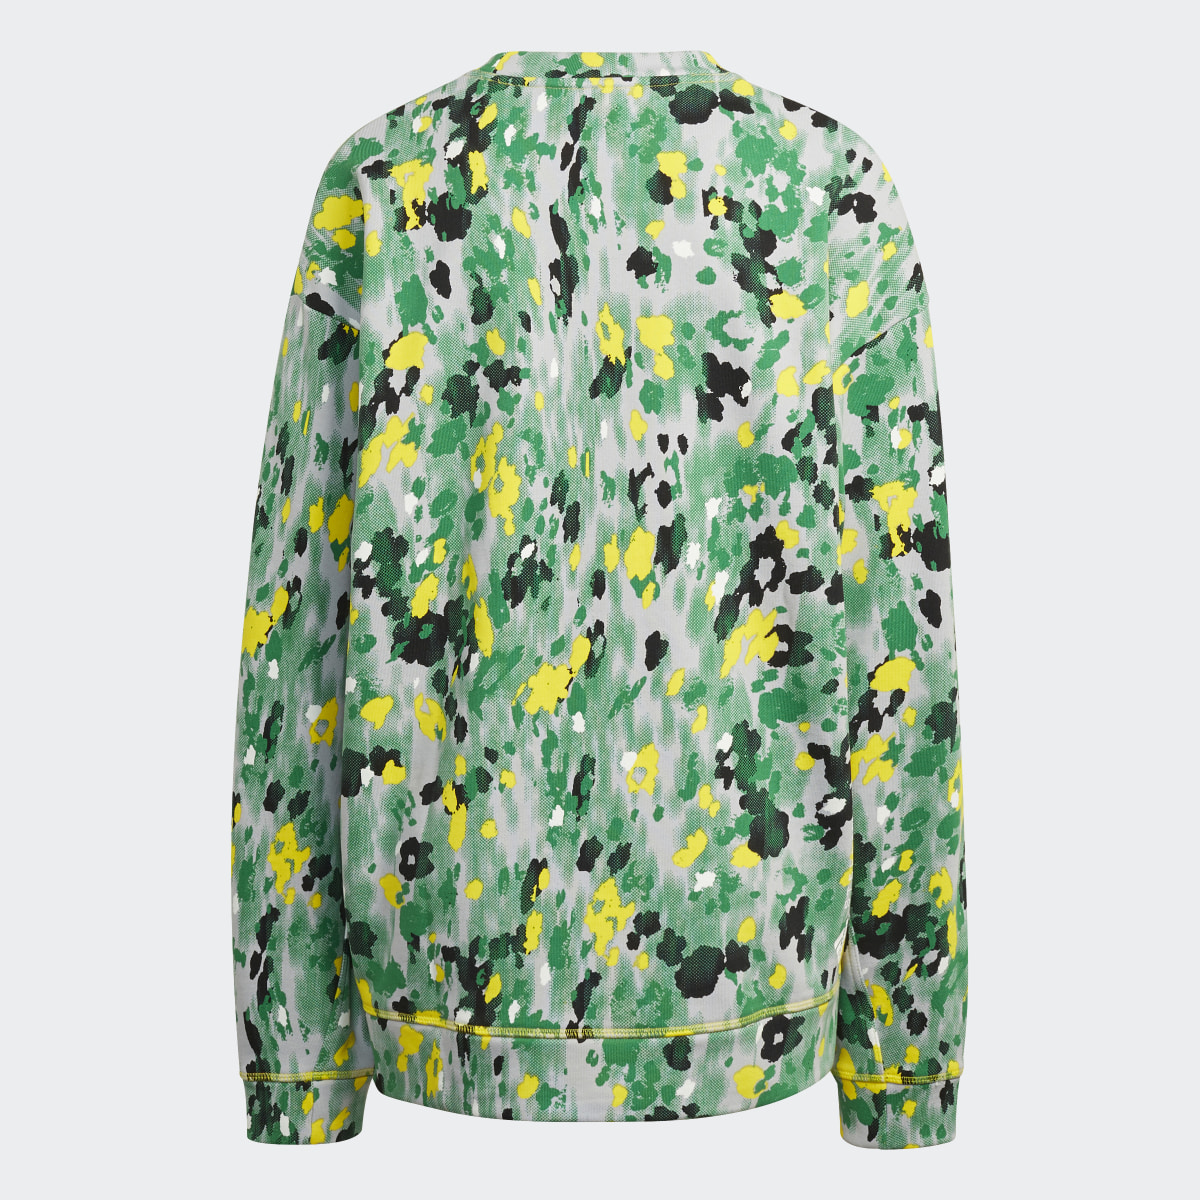 Adidas by Stella McCartney Floral Print Sweatshirt. 8